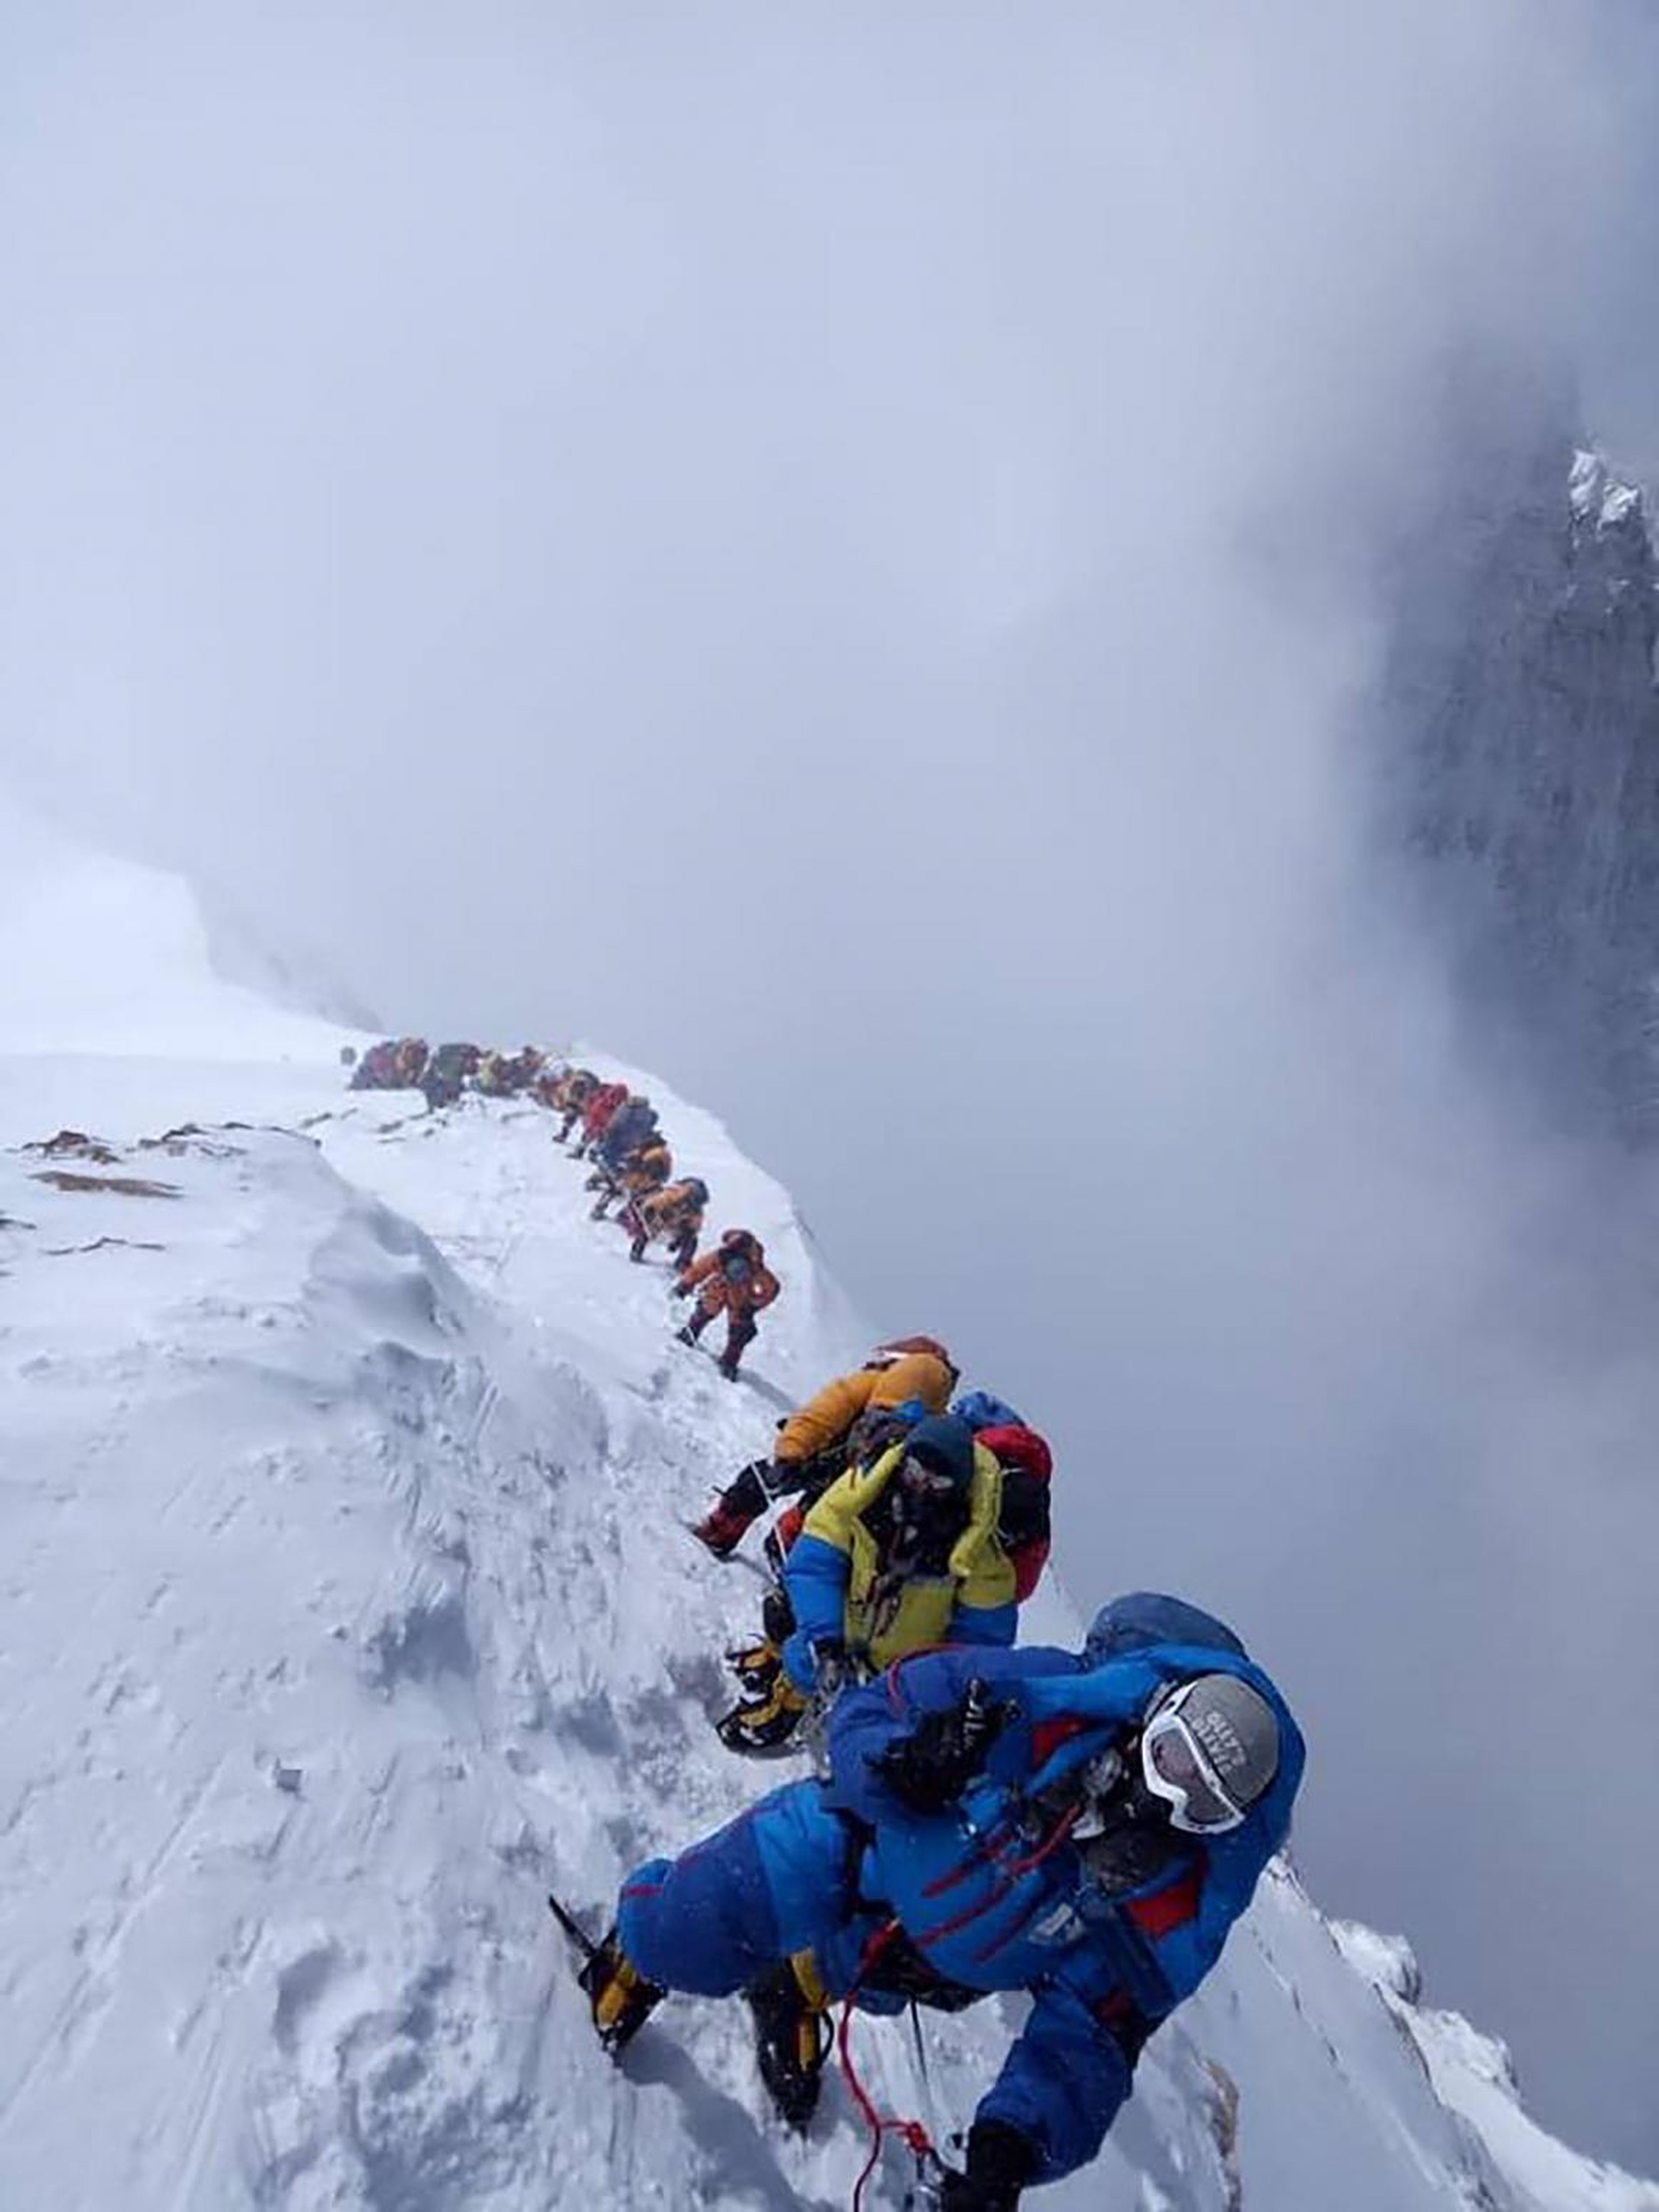 En esta foto tomada el 16 de mayo de 2018, los montañeros ascienden para conquistar el Everest. Lo hacen escalando la Cara Sur desde Nepal.